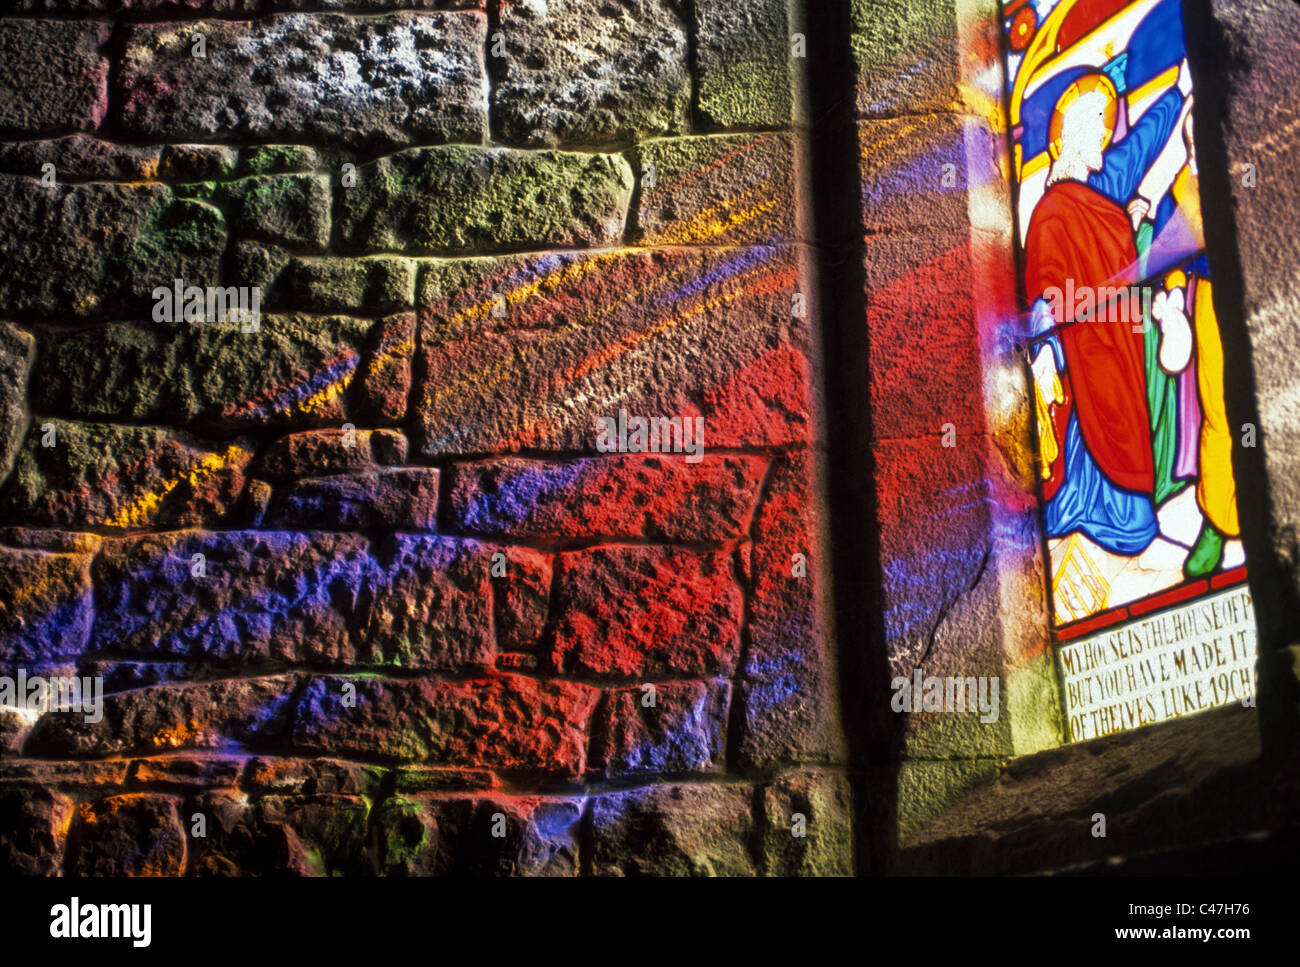 Brillante luce solare rifratta attraverso una vetrata proietta pattern colorati sulla pianura muro di pietra di una vecchia chiesa a Adare, Irlanda. Foto Stock